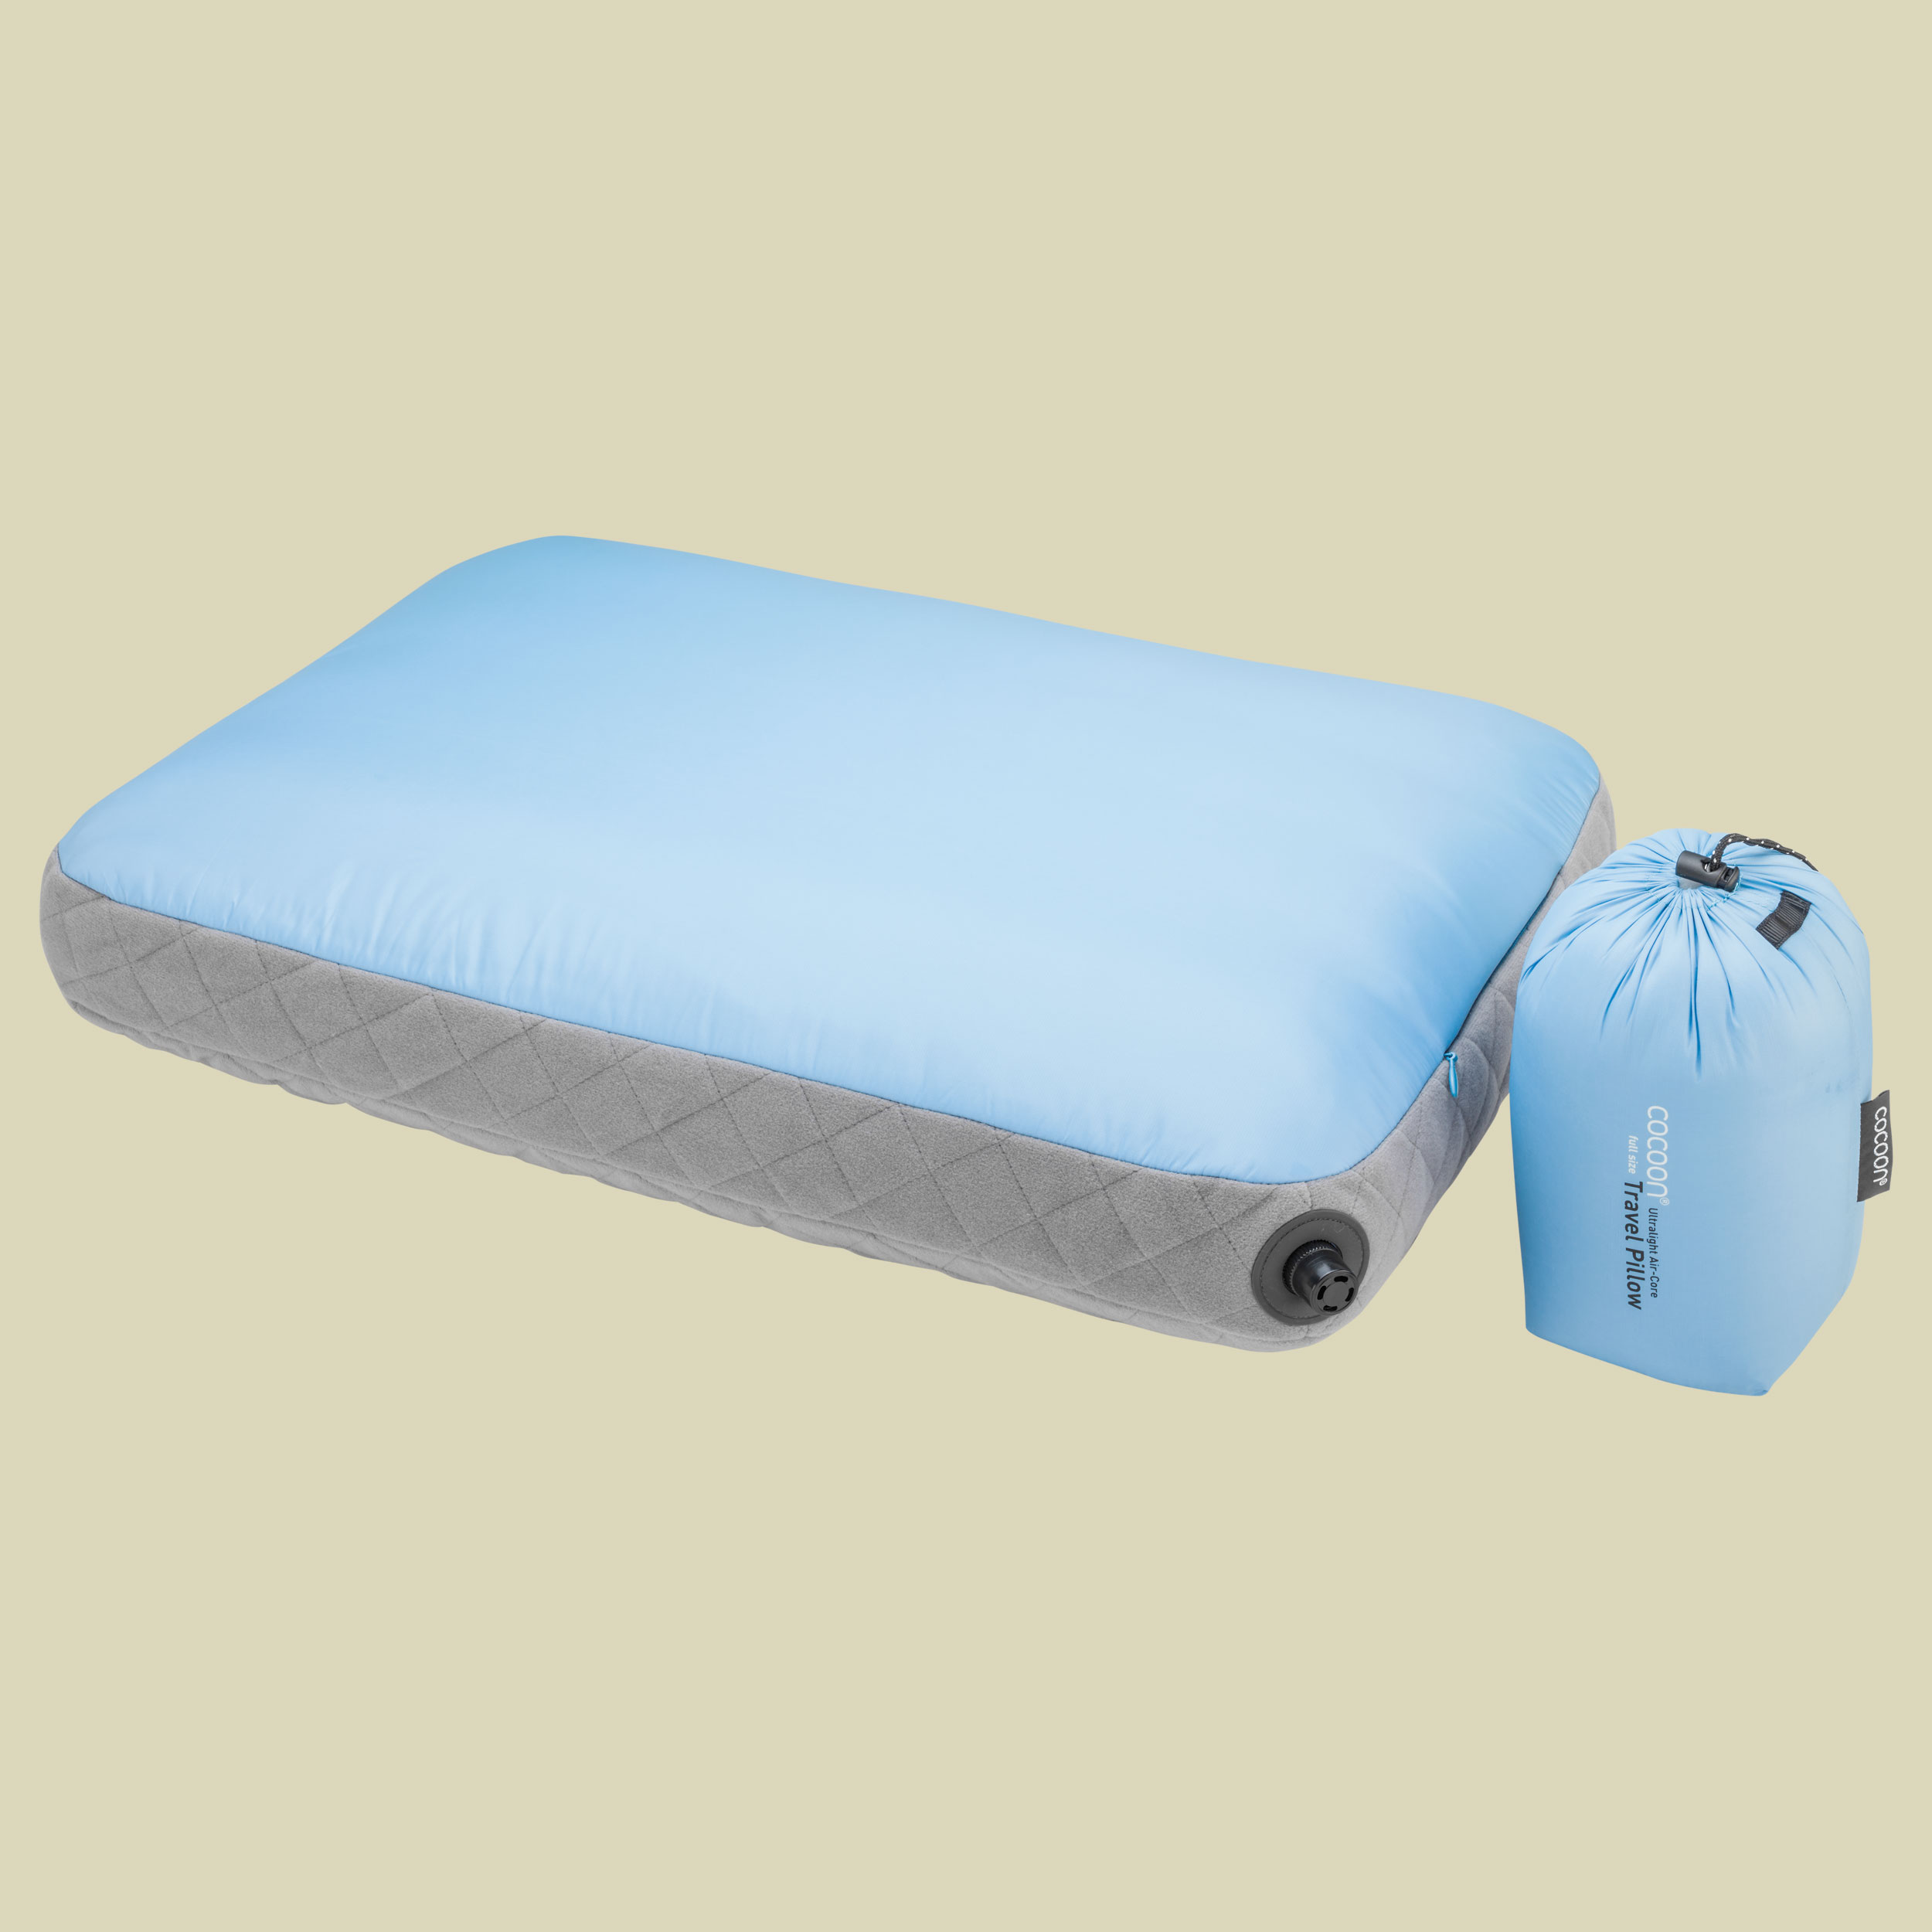 Air-Core Pillow Ultralight Größe 28 cm x 38 cm Farbe light blue/grey